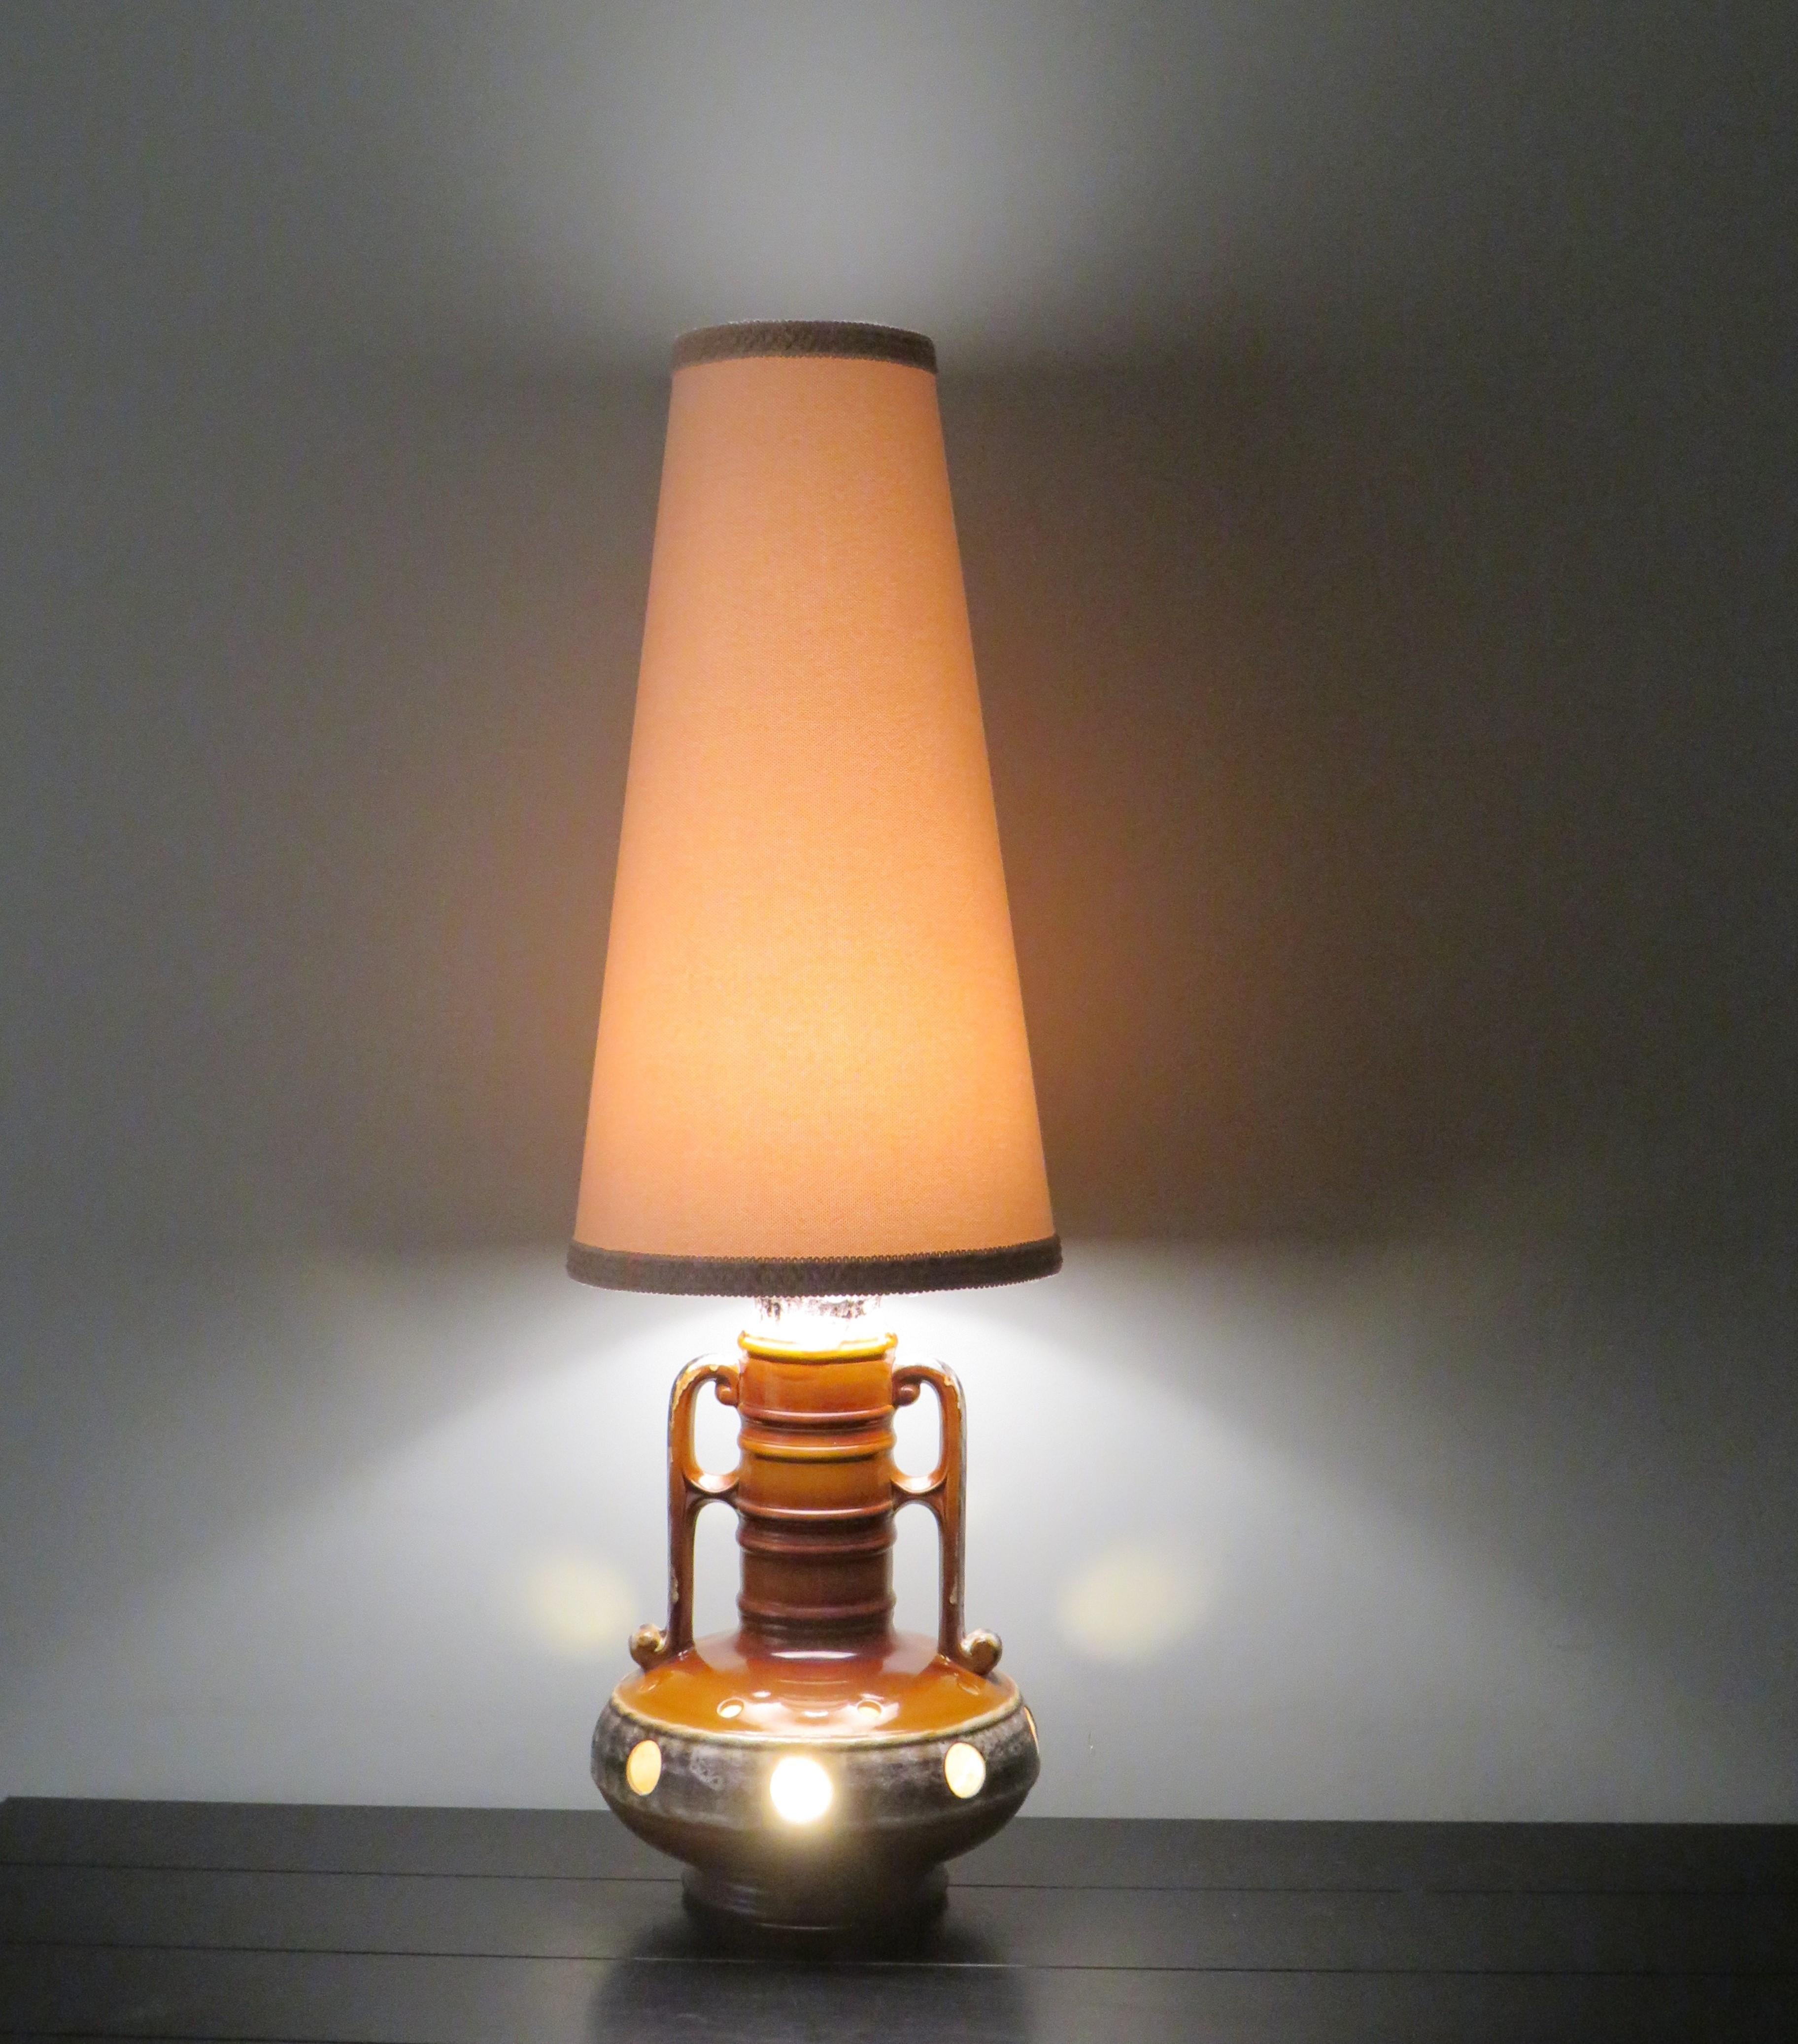 Grand lampadaire en céramique de lave grasse de couleur caramel avec des accents beiges et bruns.
La lampe a un abat-jour beige clair avec une bordure en bas et en haut dans les mêmes tons que l'abat-jour.
La base de la lampe comporte 2 points